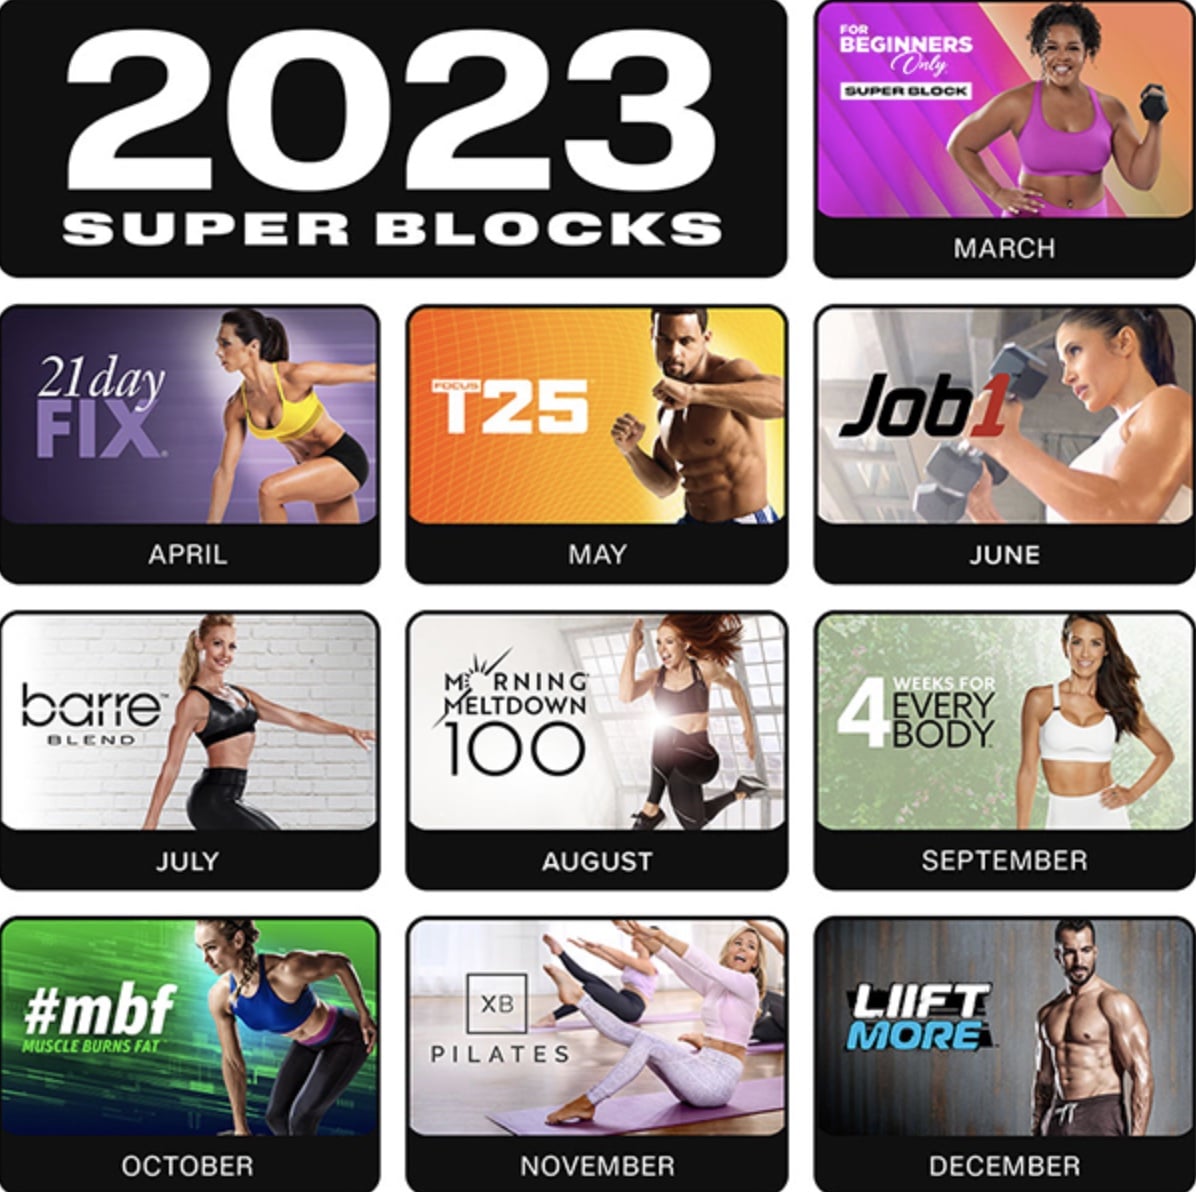 bodi-super-blocks-schedule-2023-calendar